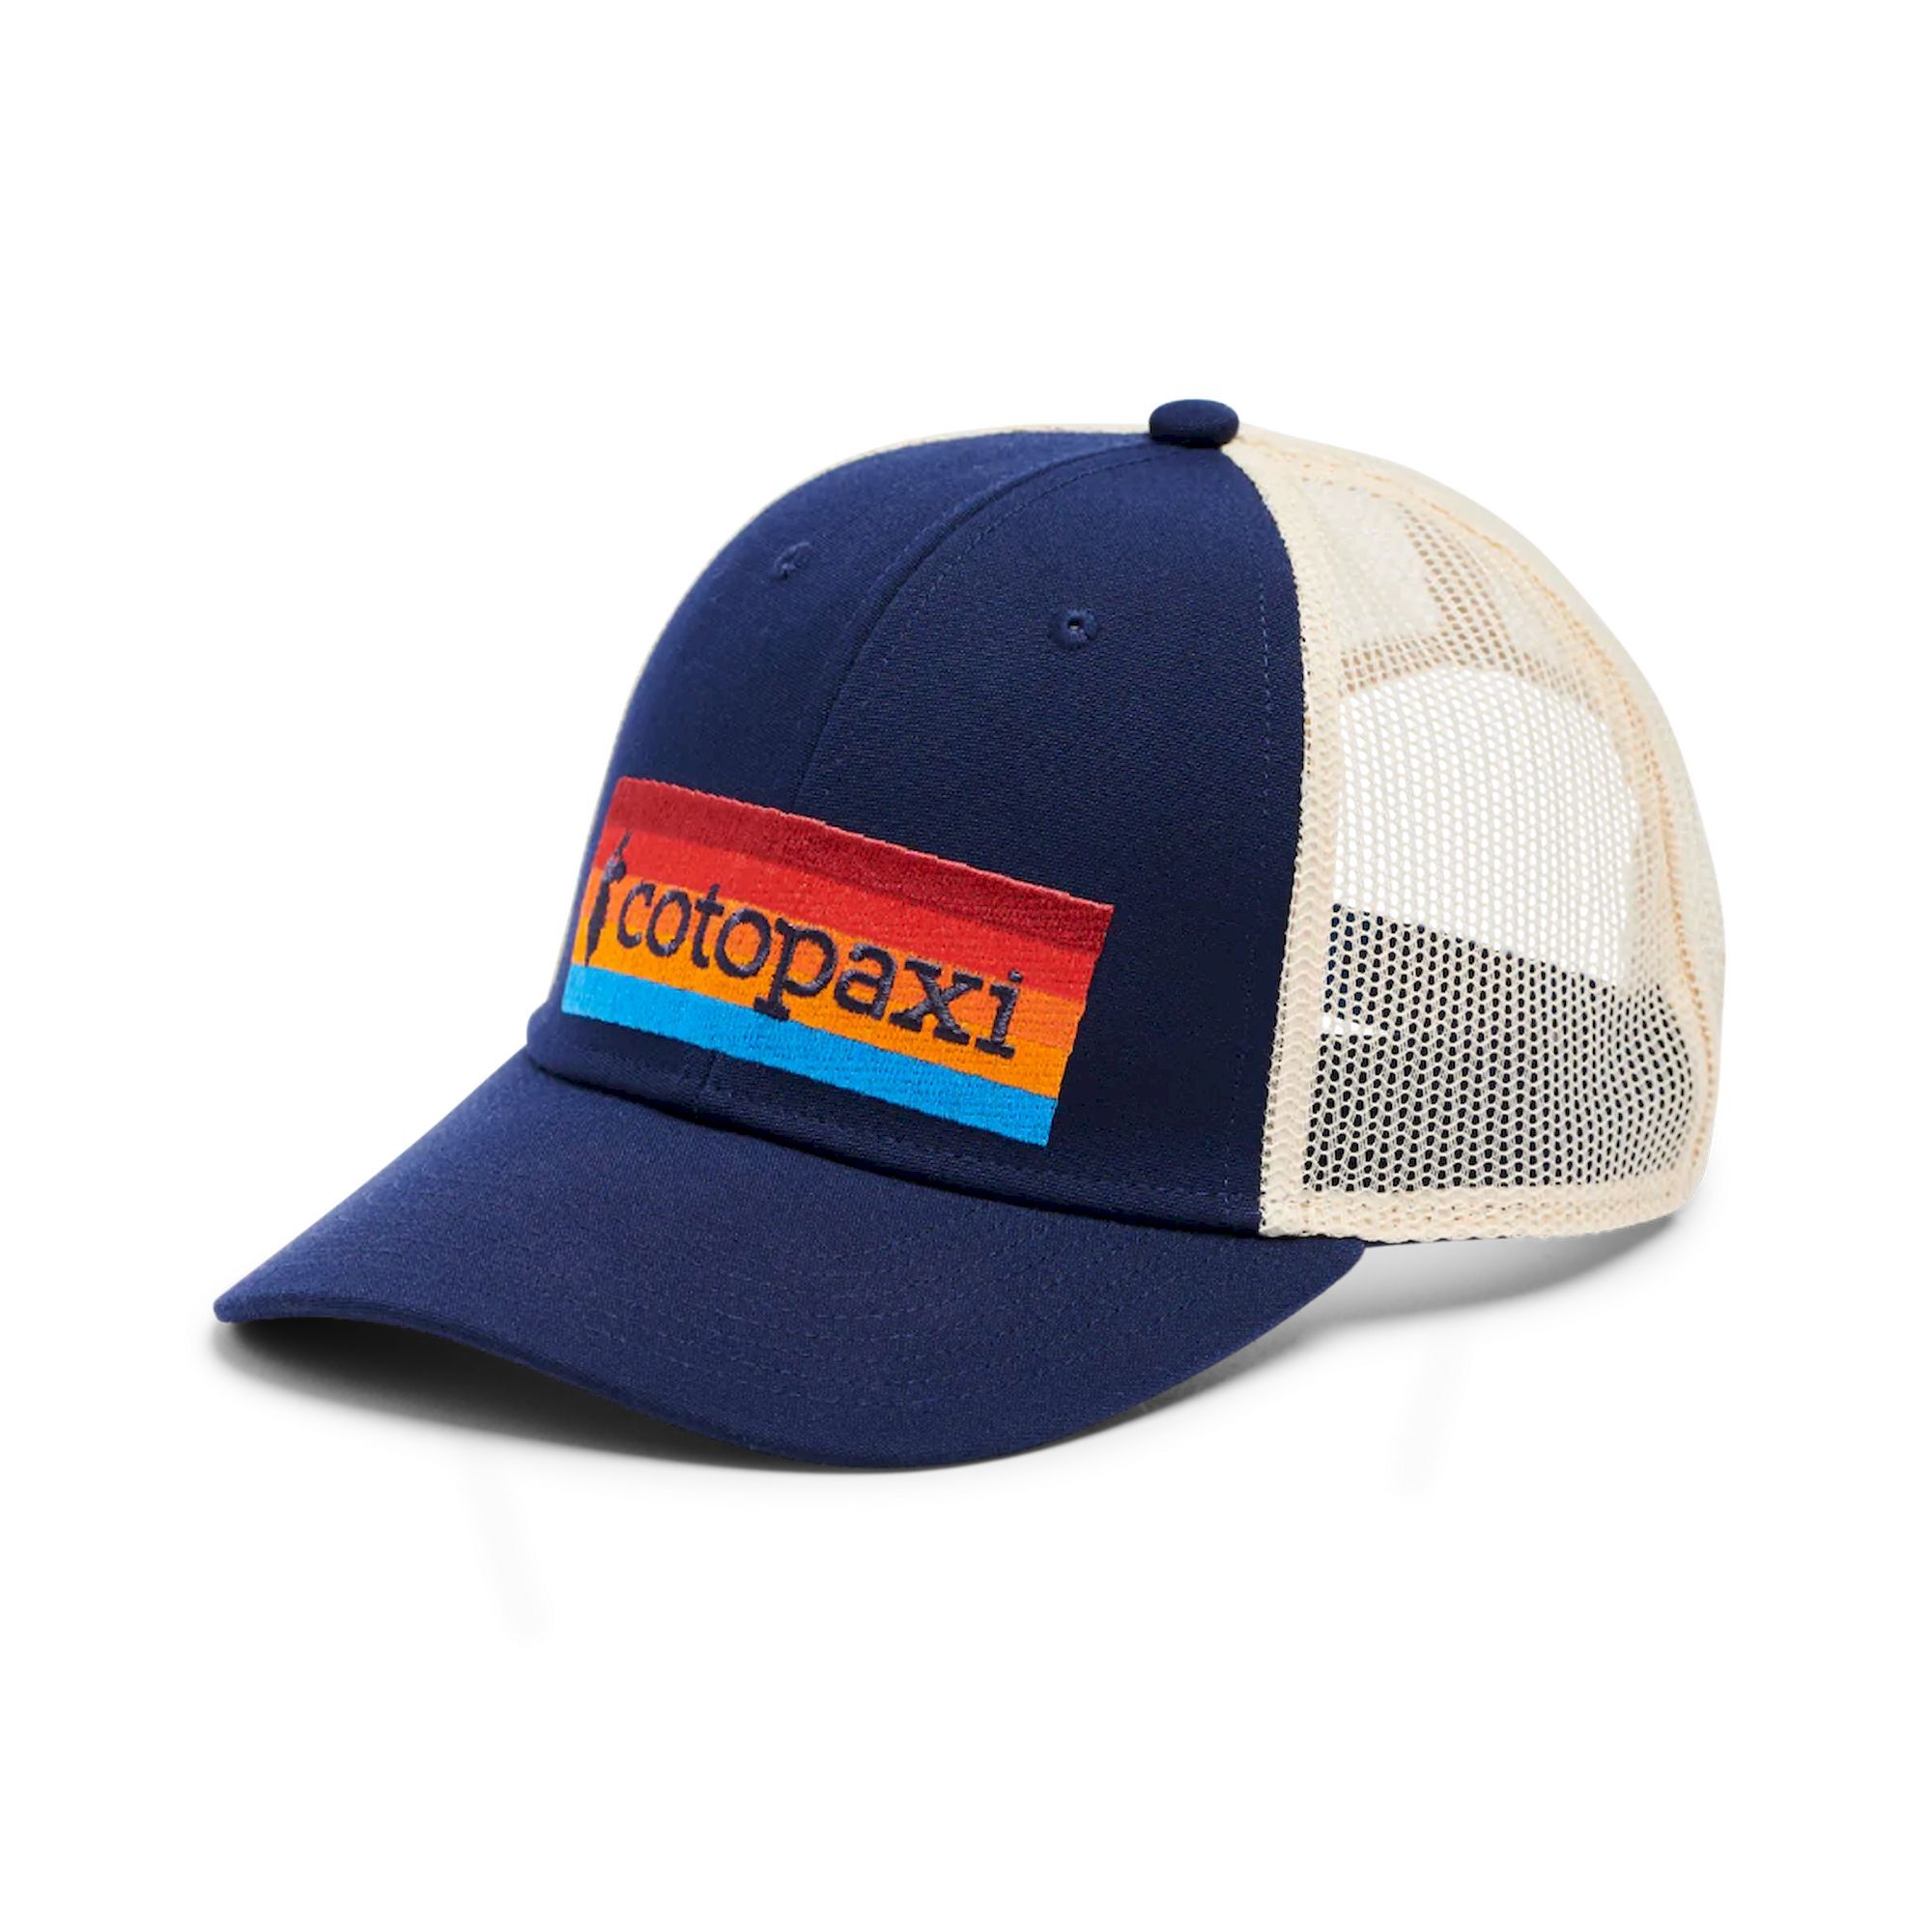 Cotopaxi On the Horizon Trucker Hat - Mütze | Hardloop